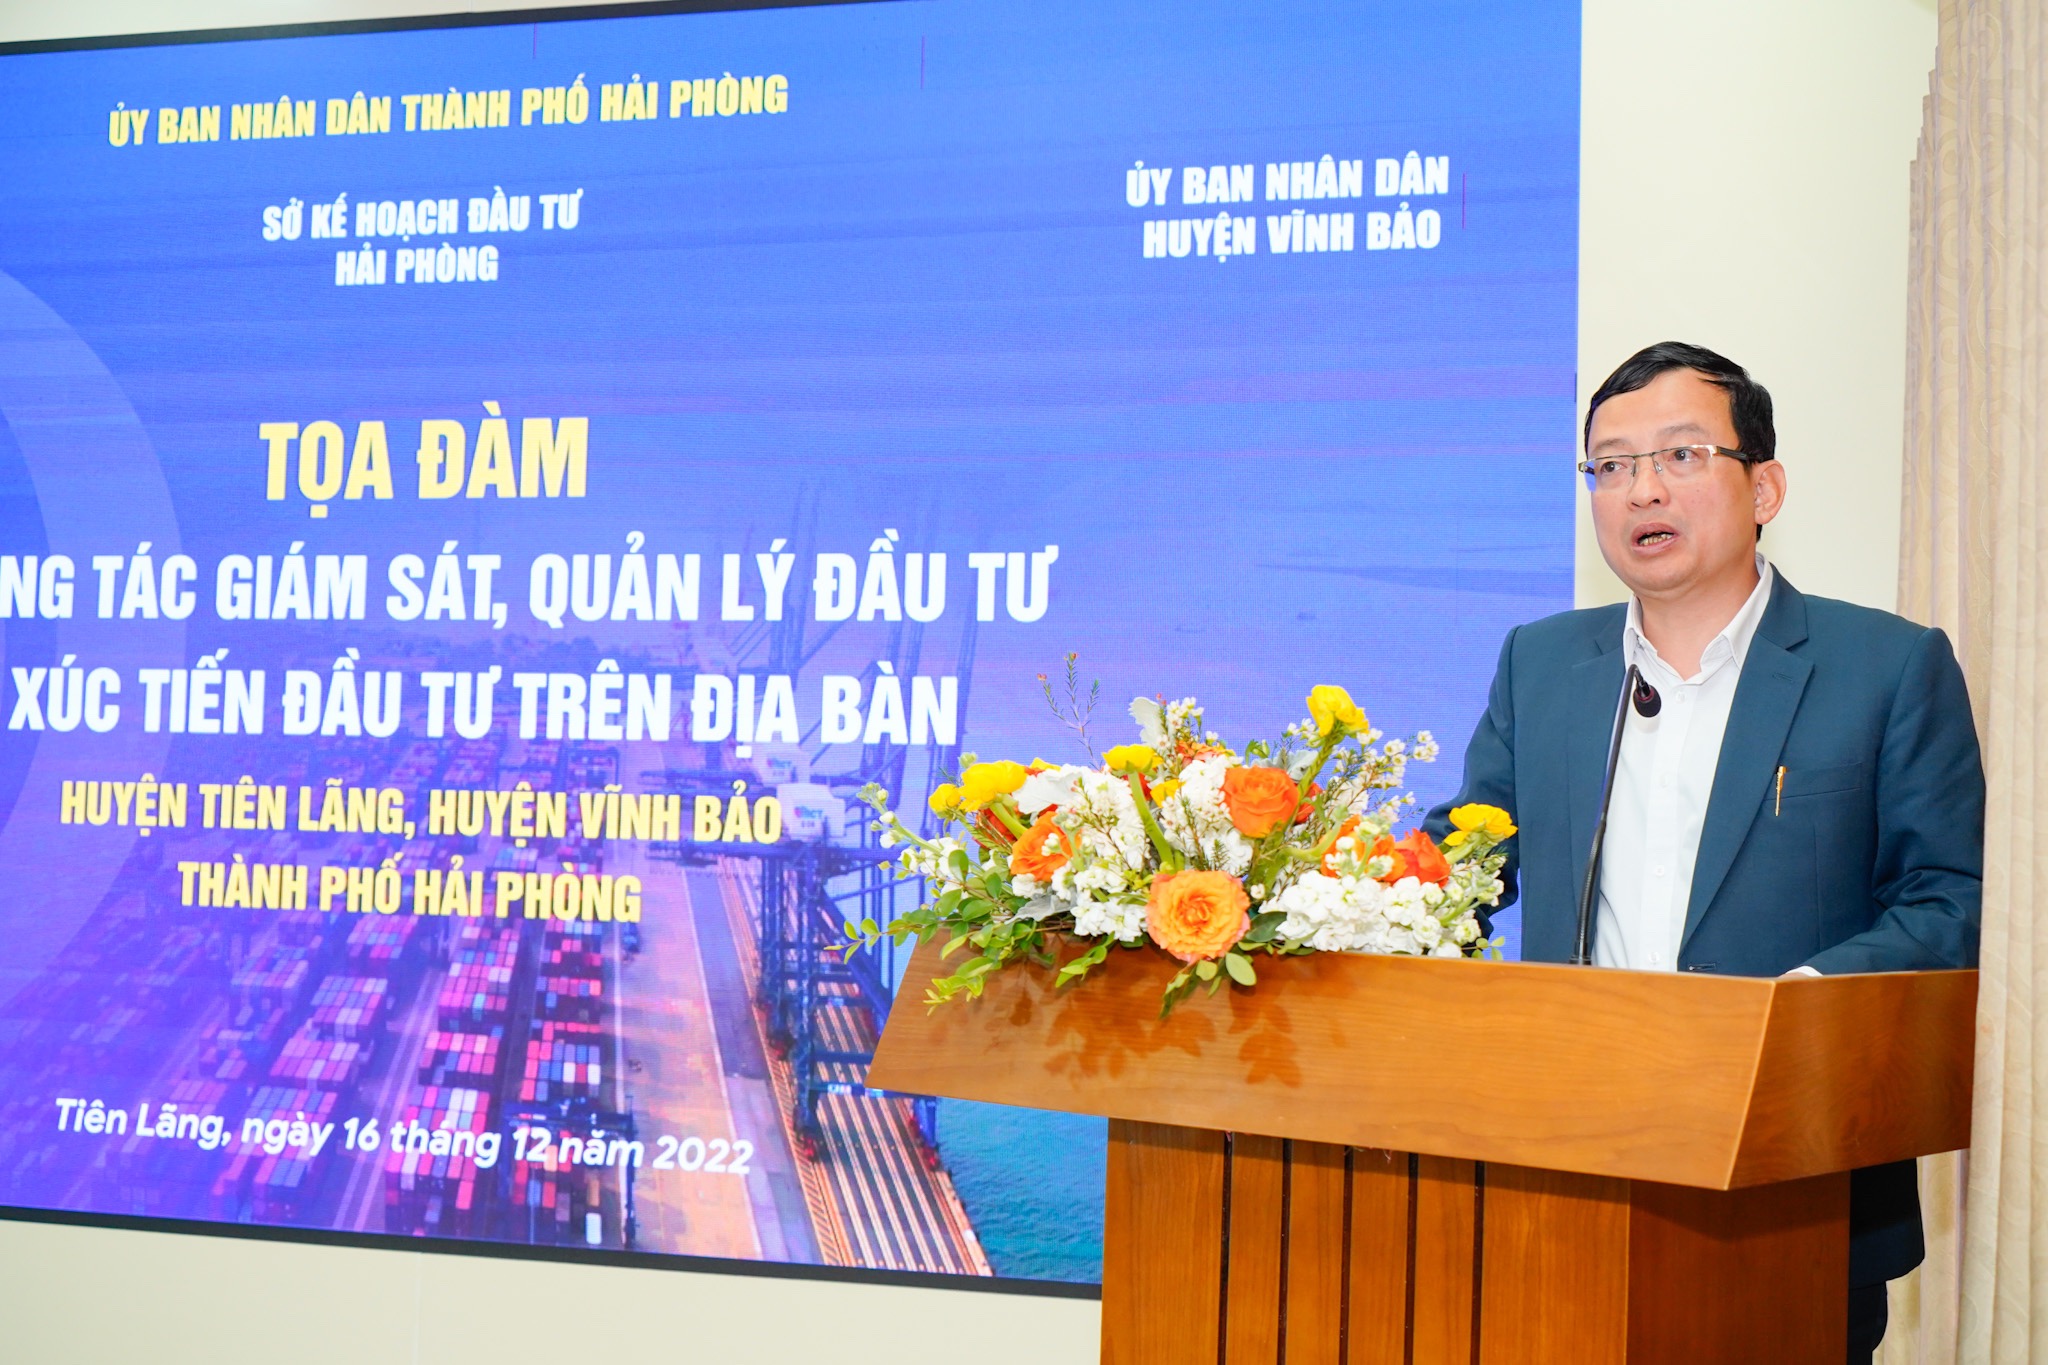 Ông Bùi Thành Cương, Chủ tịch UBND huyện Tiên Lãng phát biểu tại hội nghị